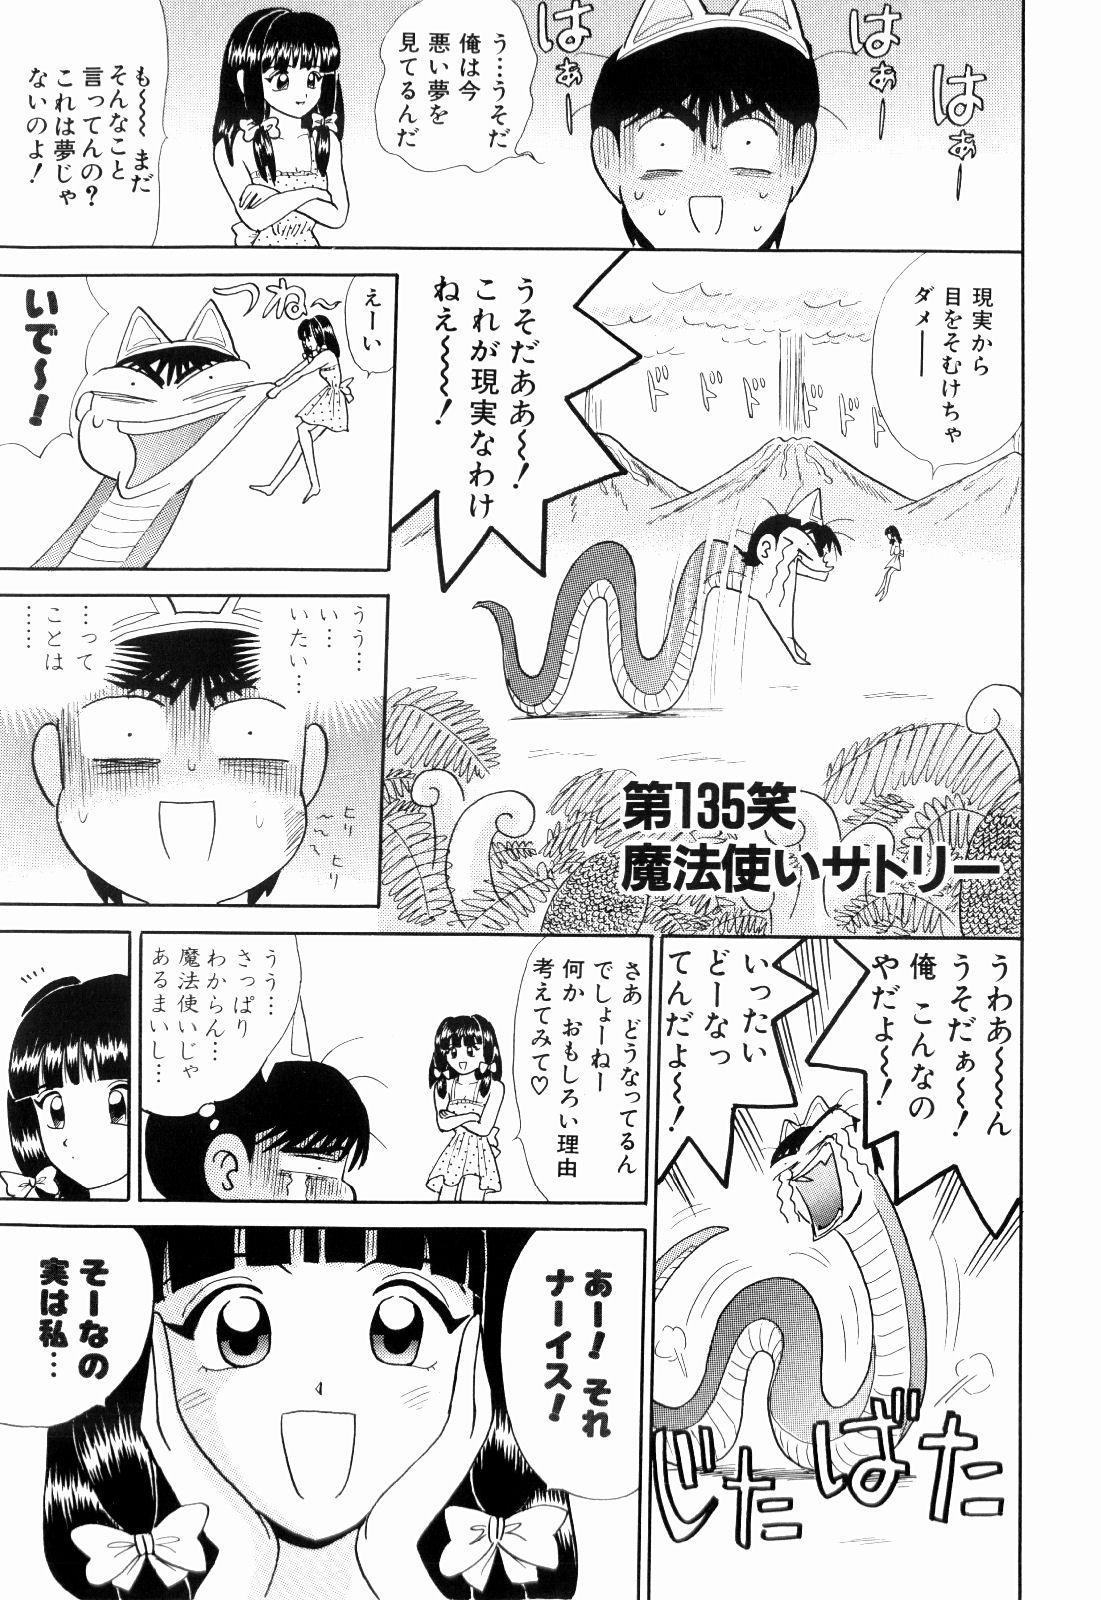 Strap On Kenjiro Kakimoto - Futari Kurashi 11 Gay - Page 5